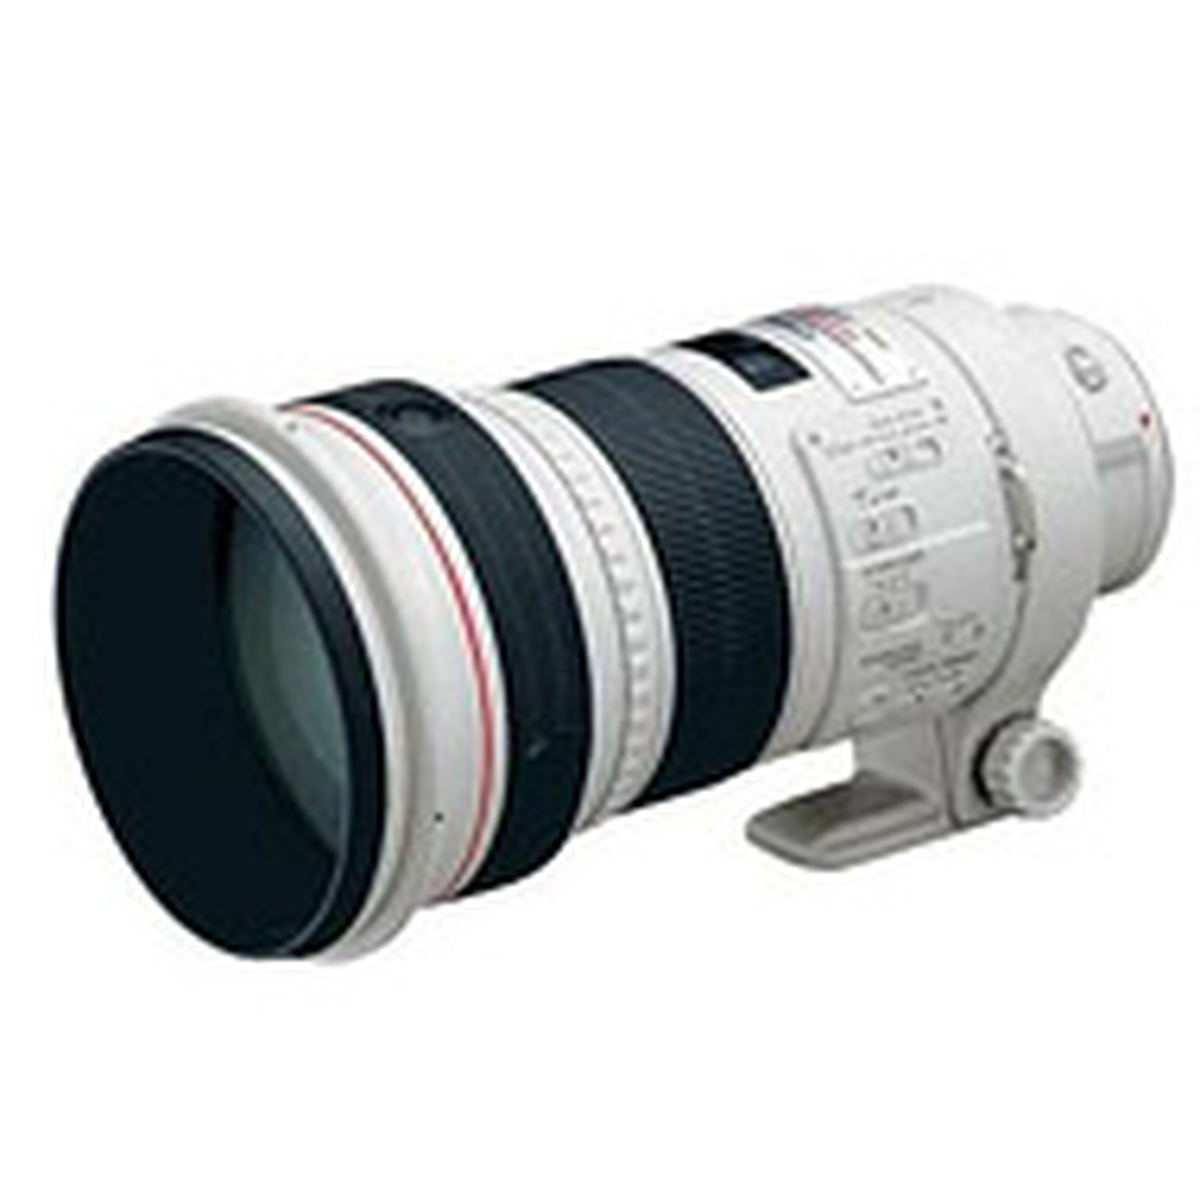 Canon EF 300mm f/2.8 L IS USM : Caratteristiche e Opinioni | JuzaPhoto